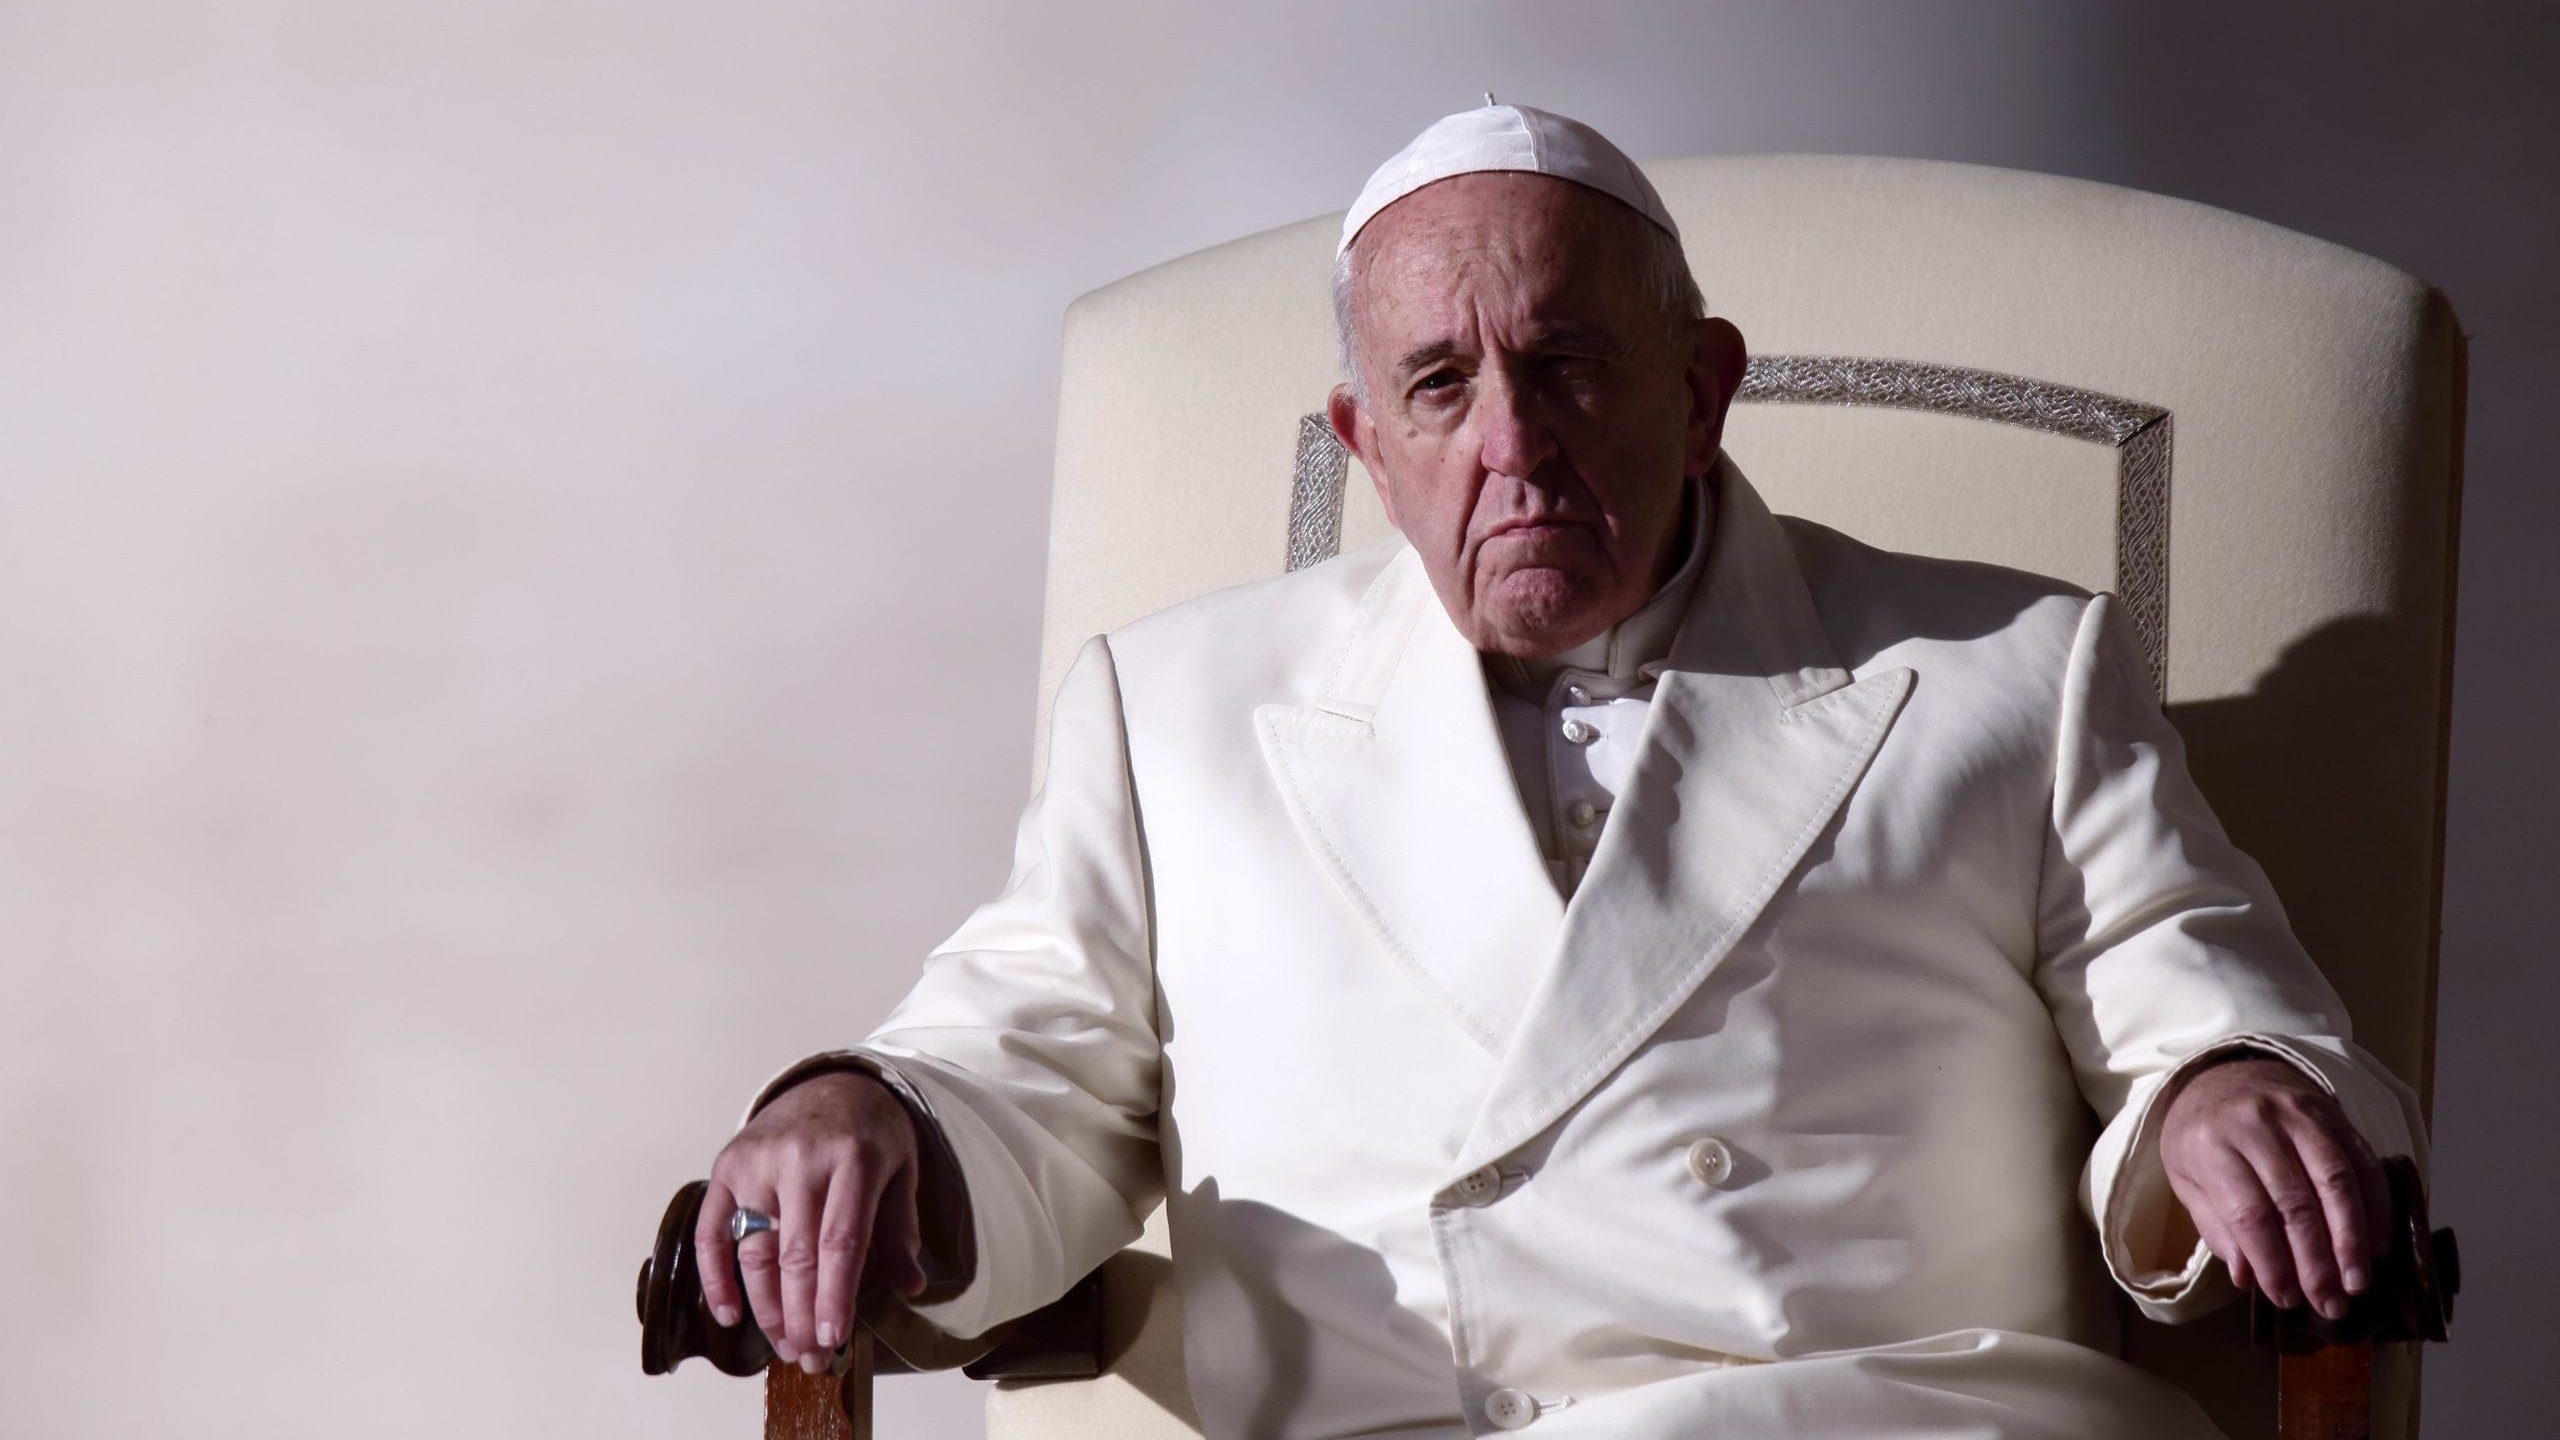 Papa Francesco ai genitori che hanno perso figli, giusto piangere il dramma ”Ma la preghiera aiuterà a rimettersi in cammino”